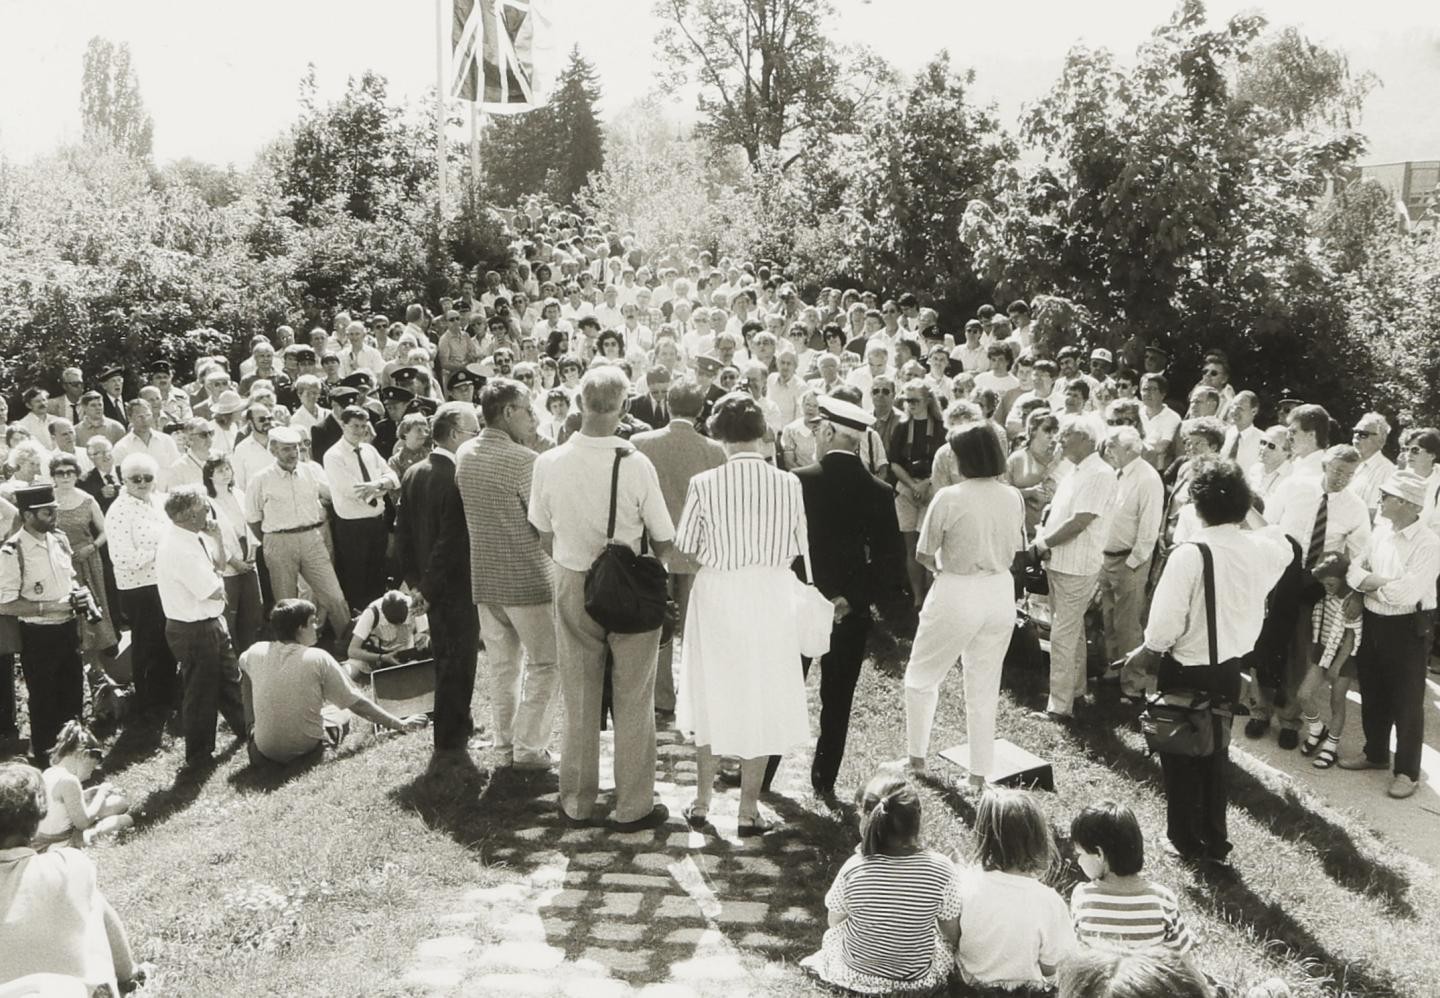  Zahlreiche Gäste erschienen zur Einweihung der Clevedon-Brücke, 1990